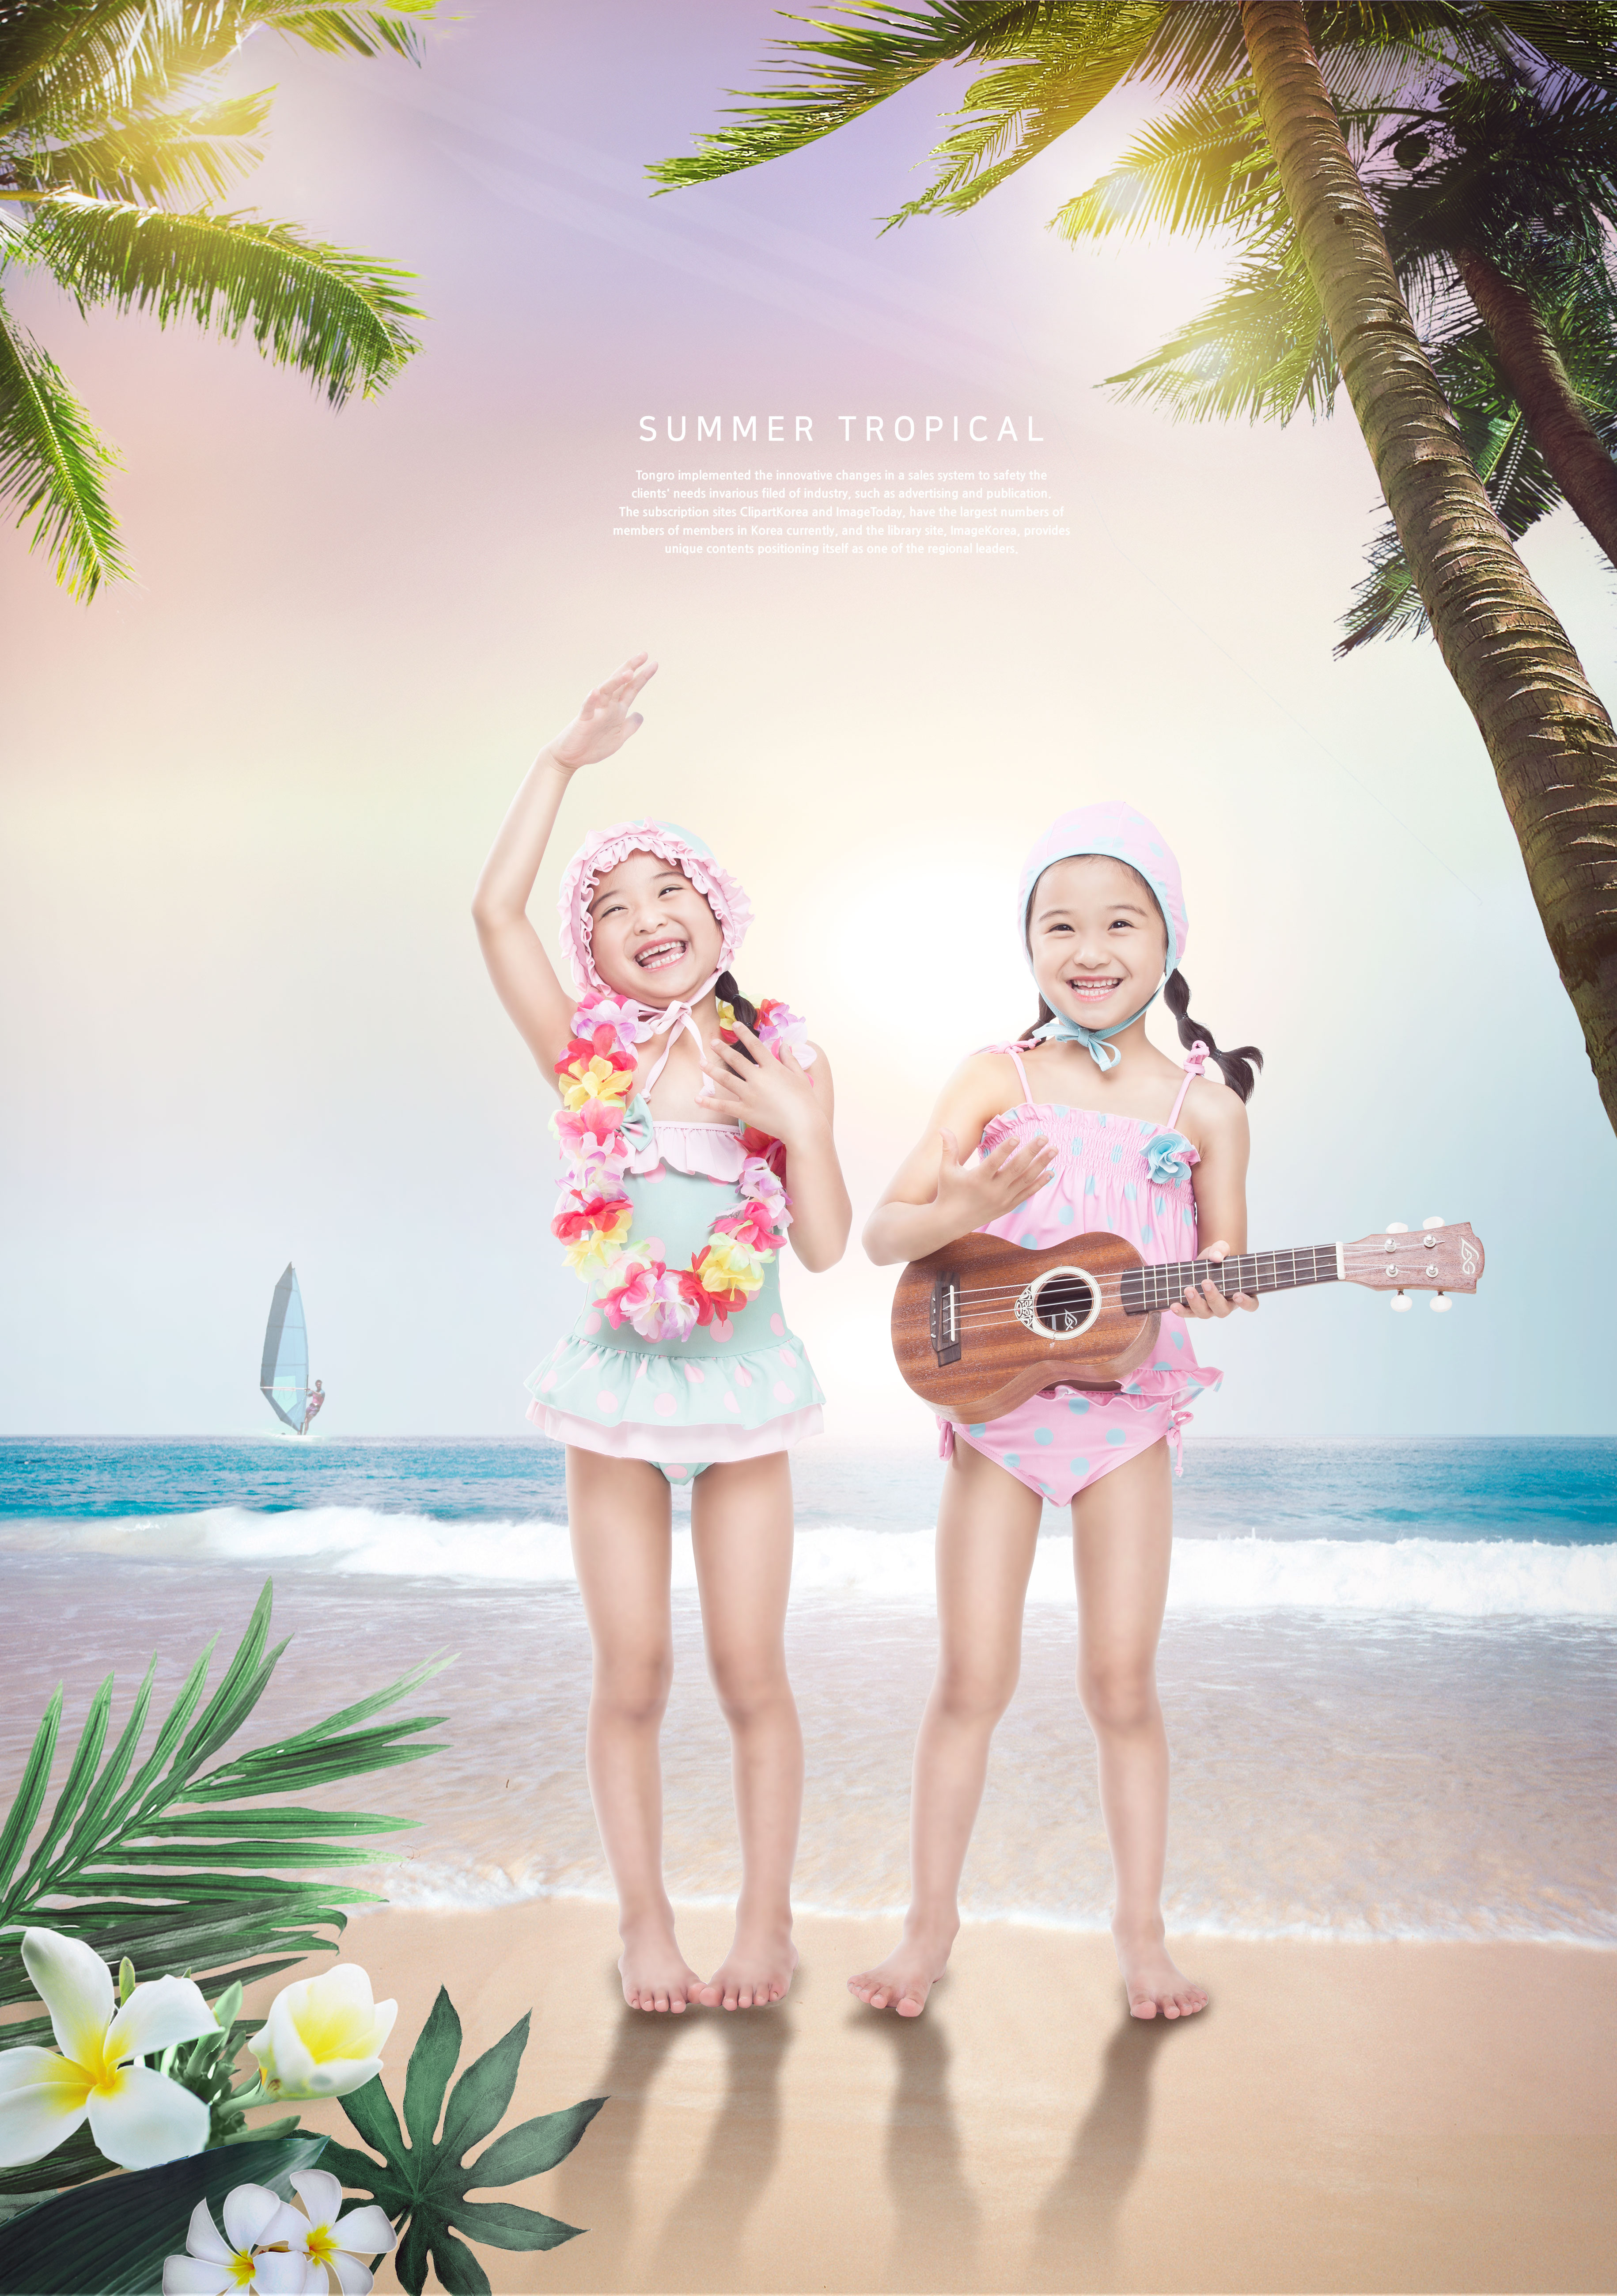 暑假热带旅游儿童主题广告海报设计模板插图(5)